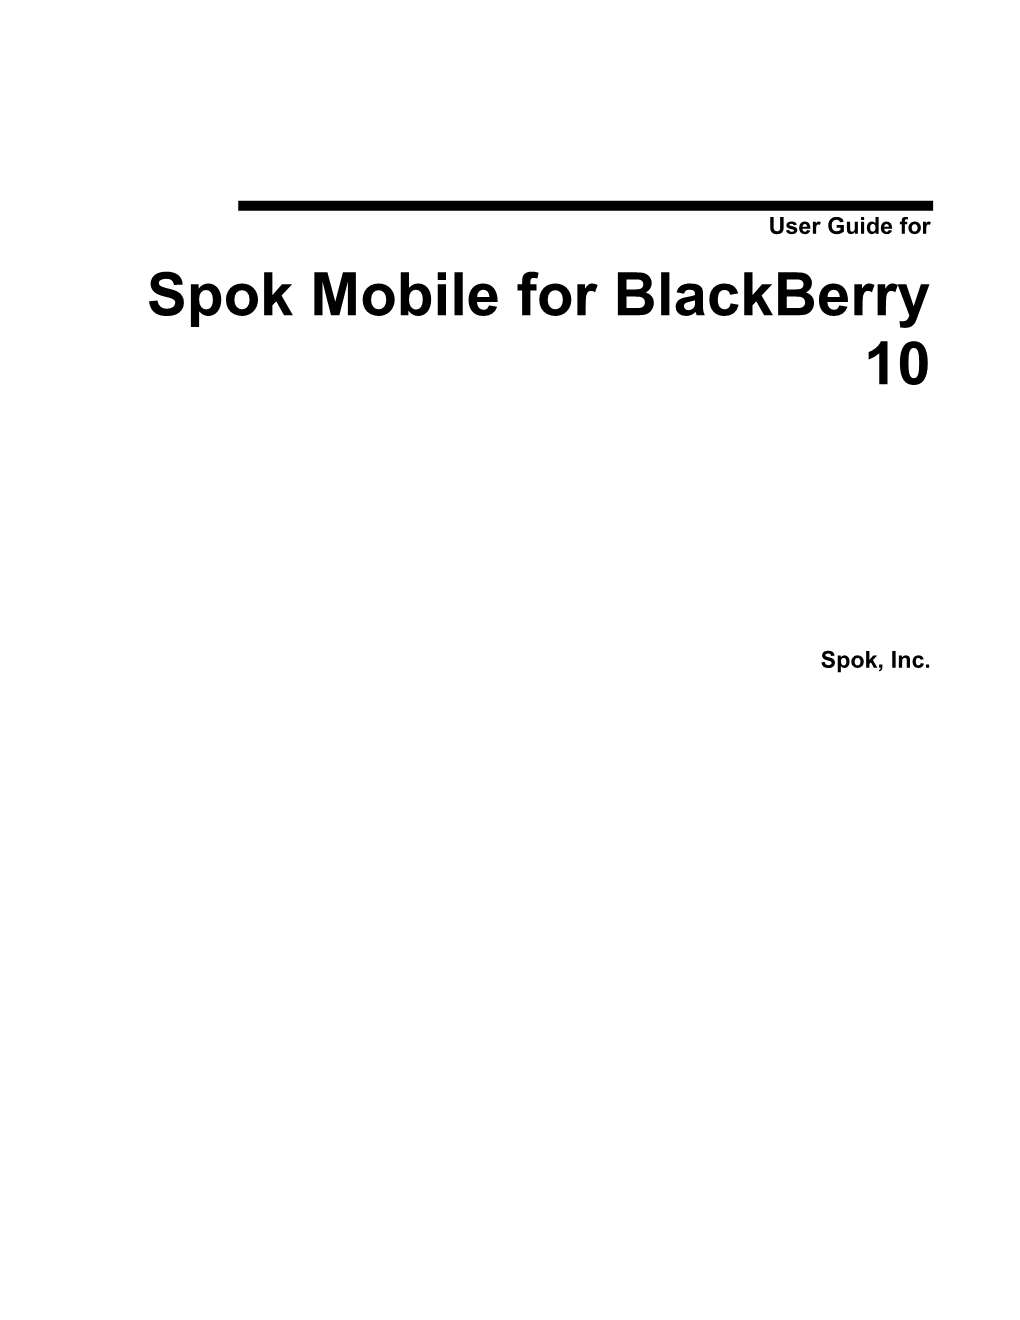 User Guide for Spok Mobile for Blackberry 10